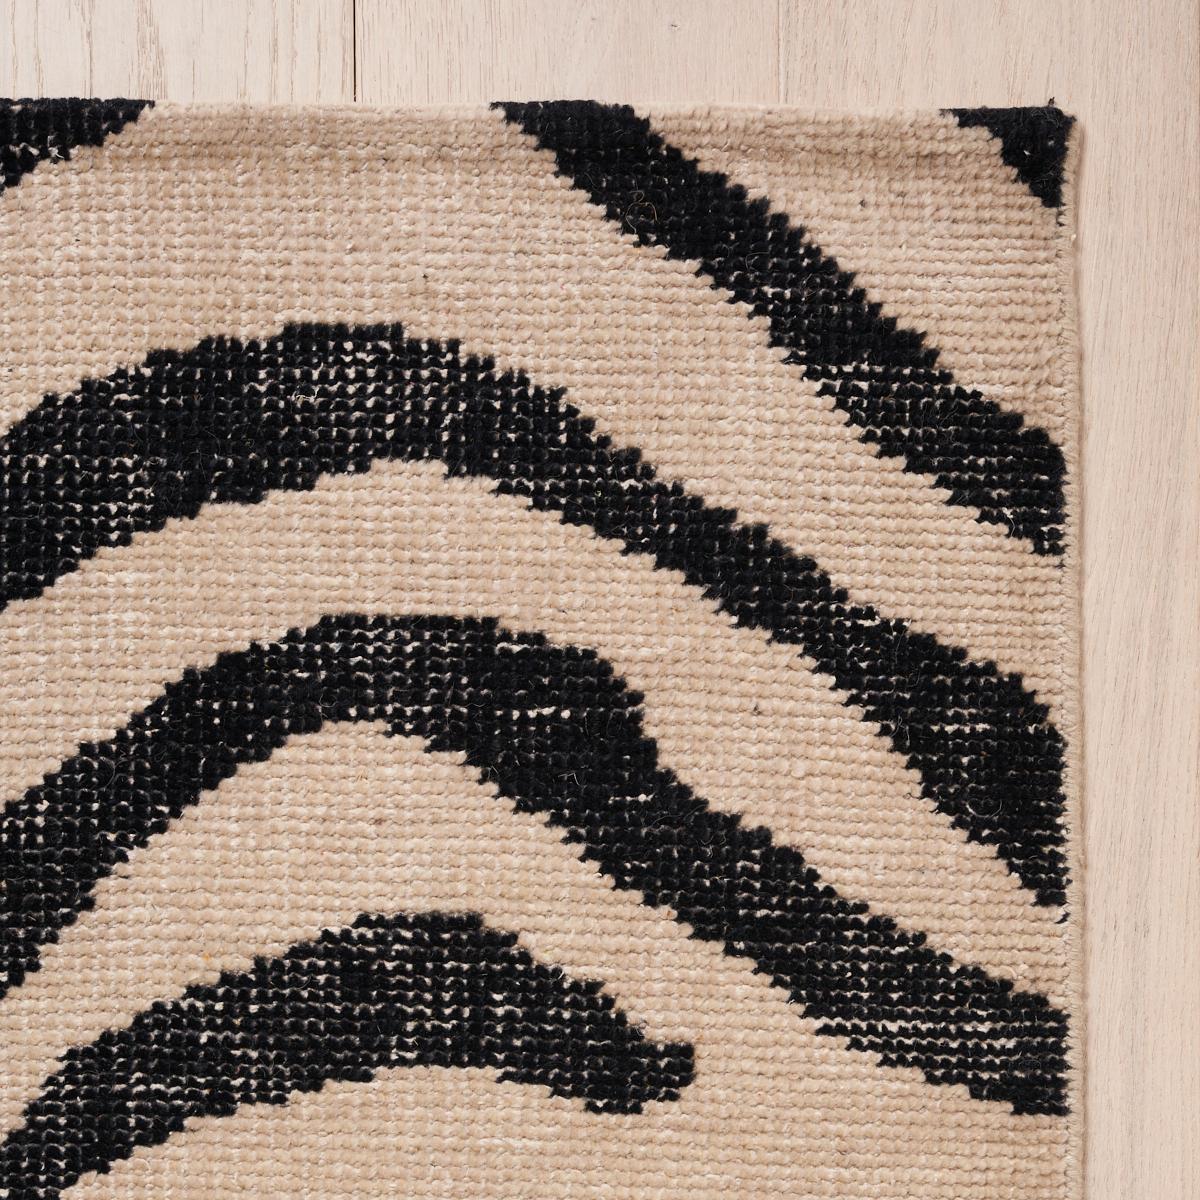 Ce tapis sera expédié en décembre. Un design noué à la main d'un chic fou, en laine et en coton, Zebre présente un motif animalier abstrait à grande échelle. Inspiré de notre populaire tissu Ze'bre Epingle, il s'agit d'un design graphique